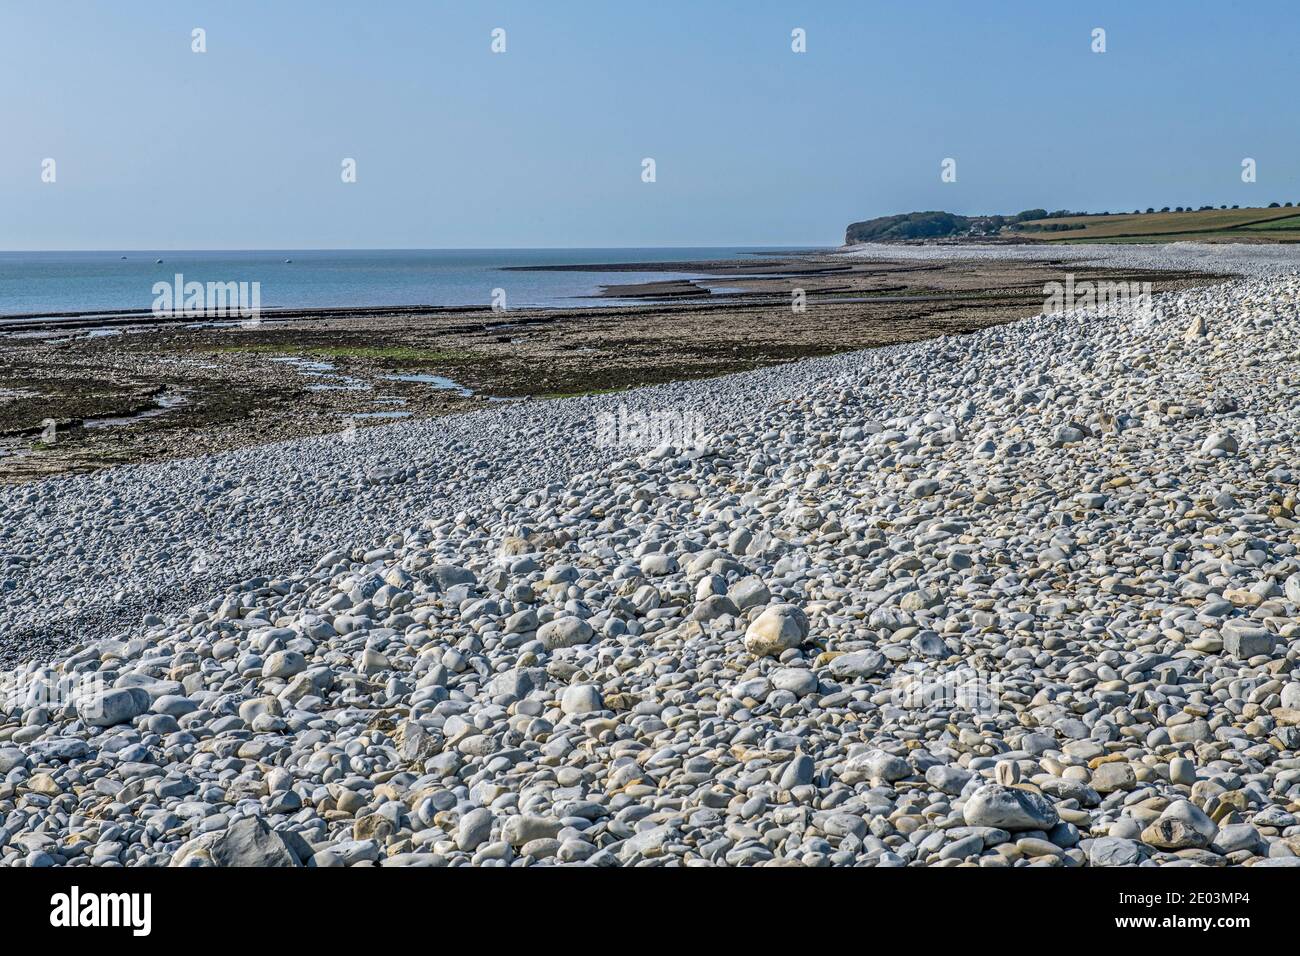 Aberthaw Beach mirando al oeste a lo largo de la costa con guijarros, rocas y arena. Este es el comienzo de la Costa de Patrimonio Glamourgan al sur de Gales Foto de stock